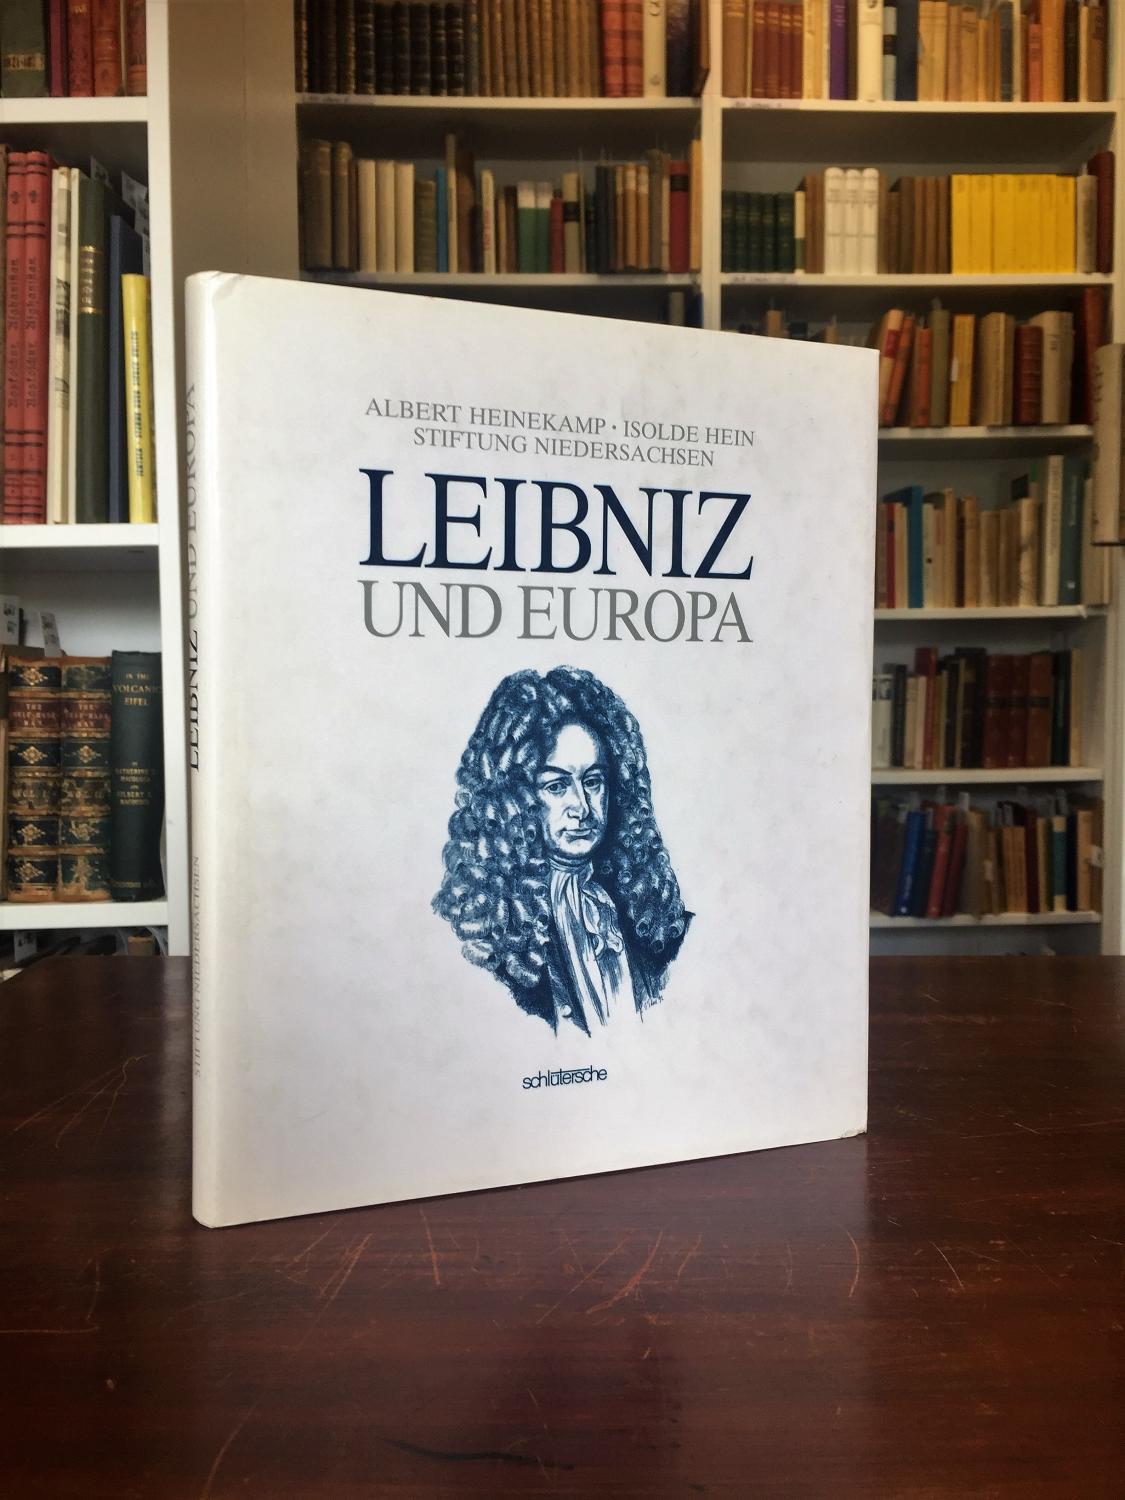 Leibniz und Europa. - Heinekamp Albert,Hein Isolde, Leibniz Gottfried Wilhelm,